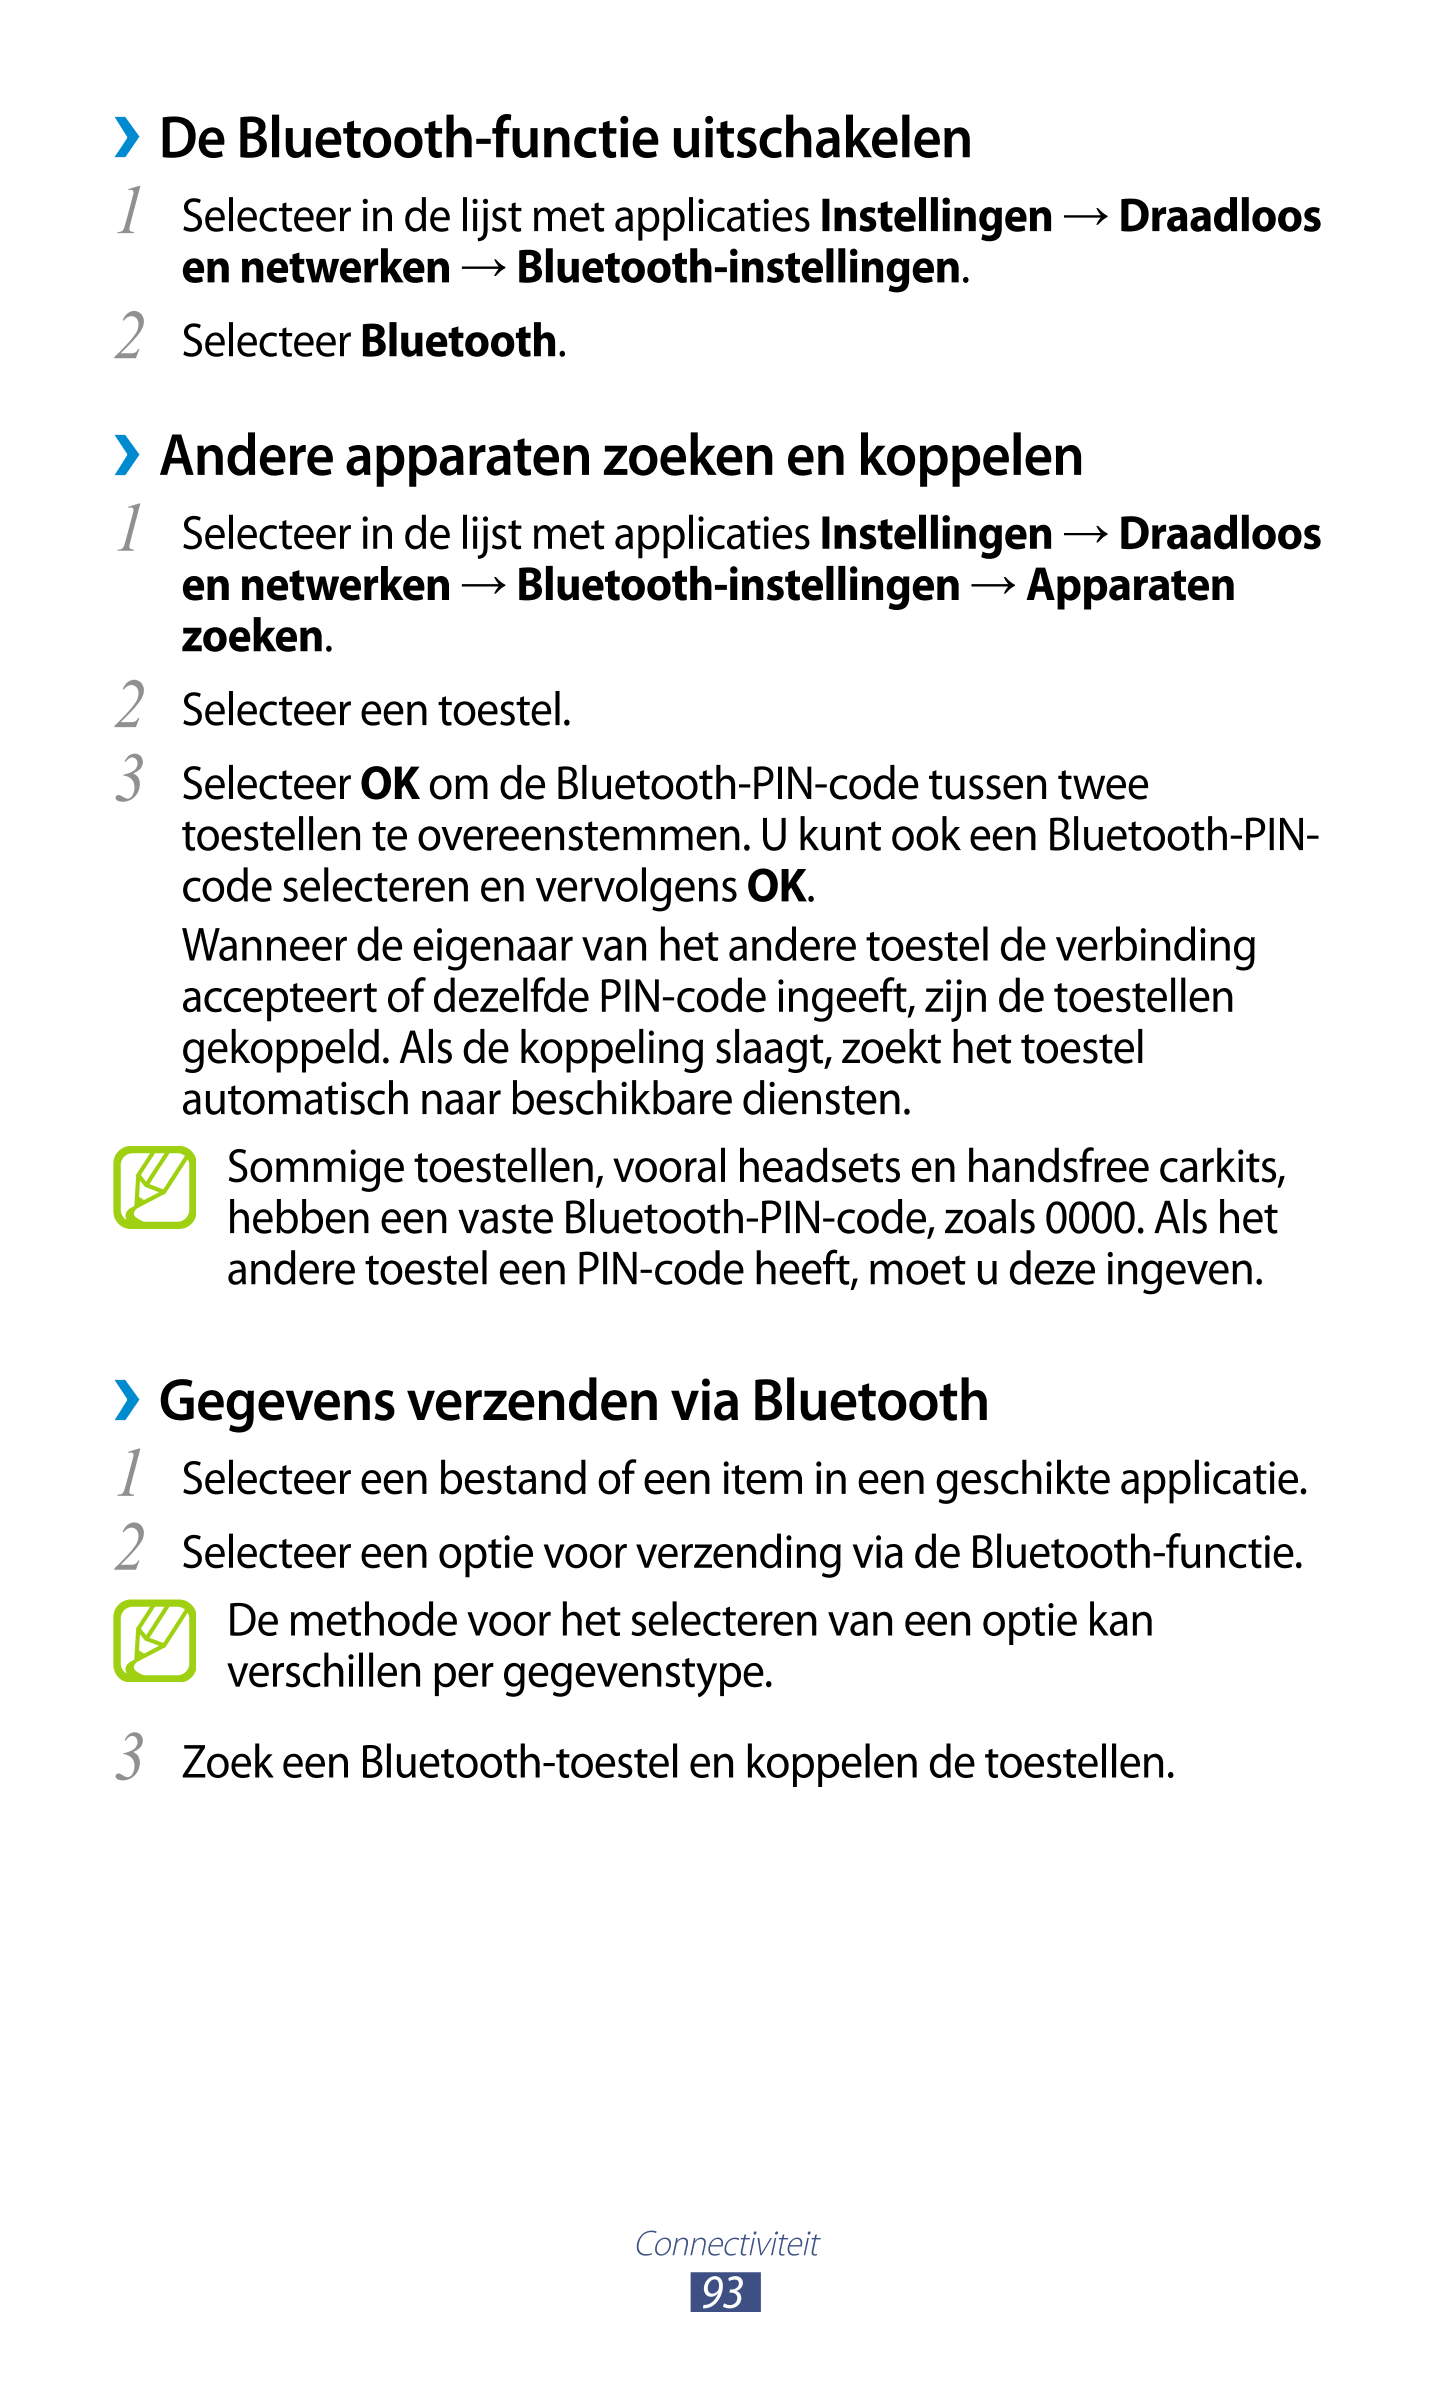   De Bluetooth-functie uitschakelen
1  Selecteer in de lijst met applicaties  Instellingen  →  Draadloos 
en netwerken  →  Bluet